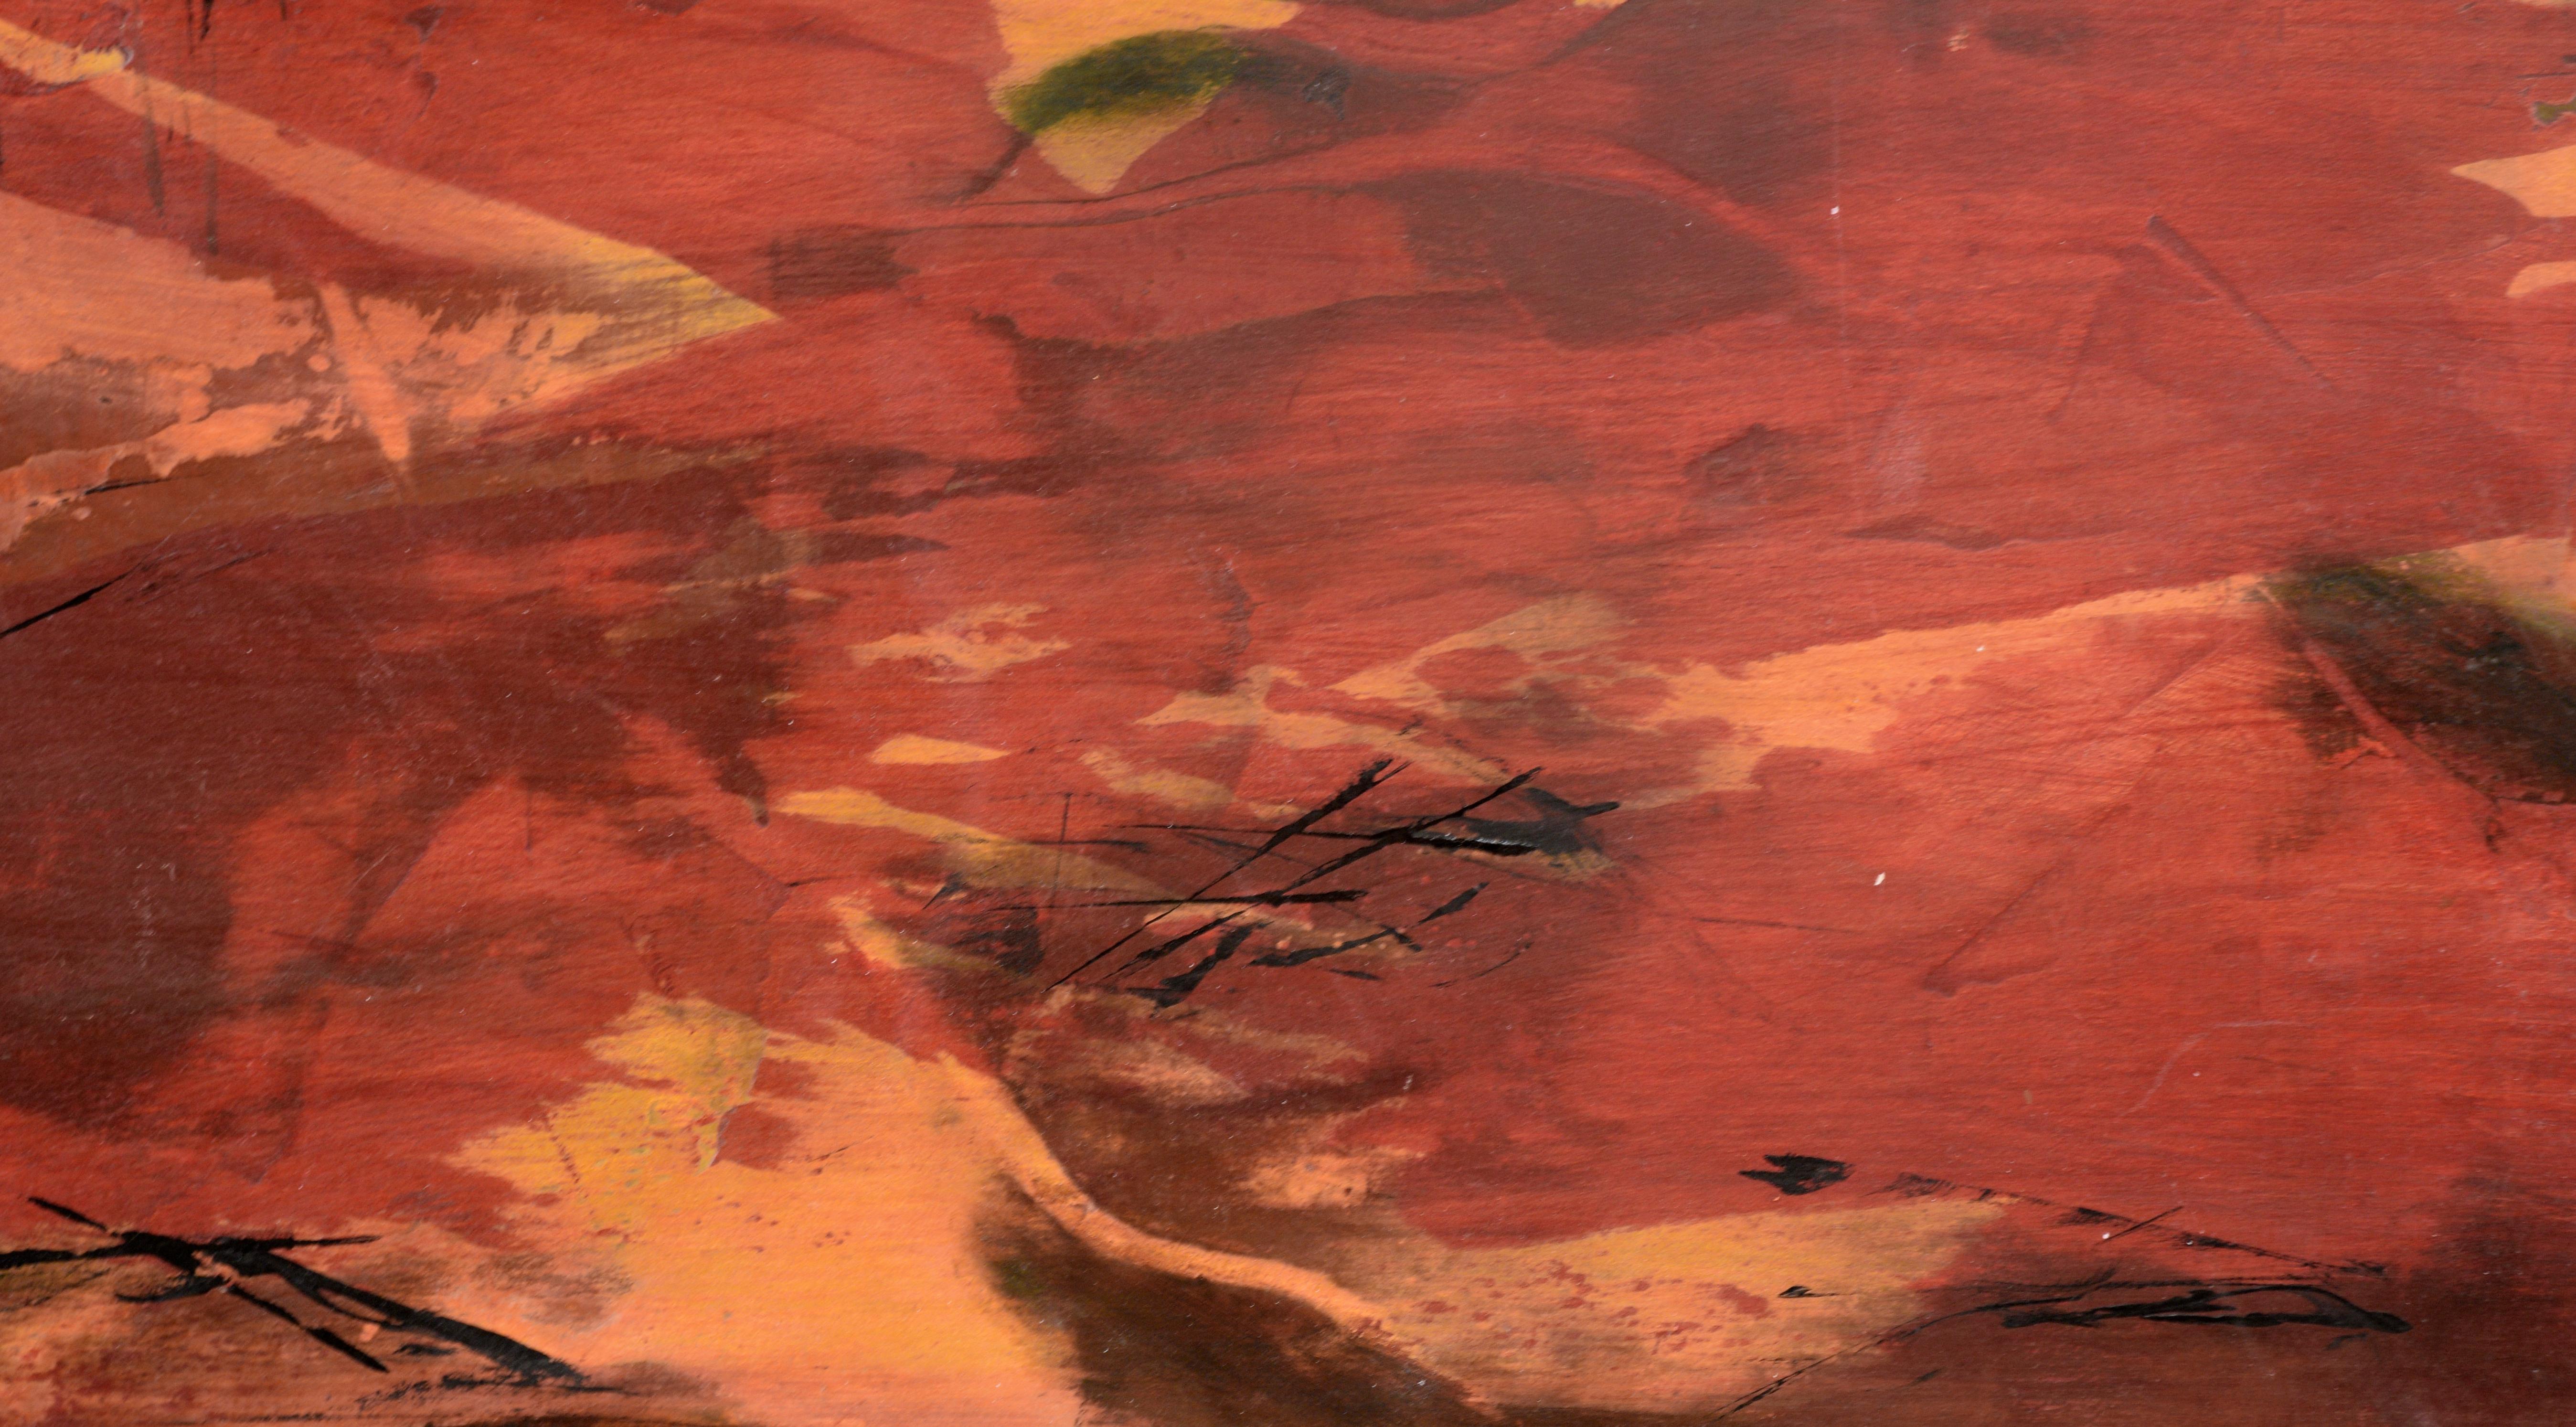 Markante abstrahierte Landschaft von Linda West (Amerikanerin, geb. 1953). Eine kühne rote Landschaft ist mit verkohlten Baumresten übersät. Der Himmel hat eine trübe blaugrüne Farbe, als wäre er mit Rauch und Asche bedeckt. Die Landschaft ist